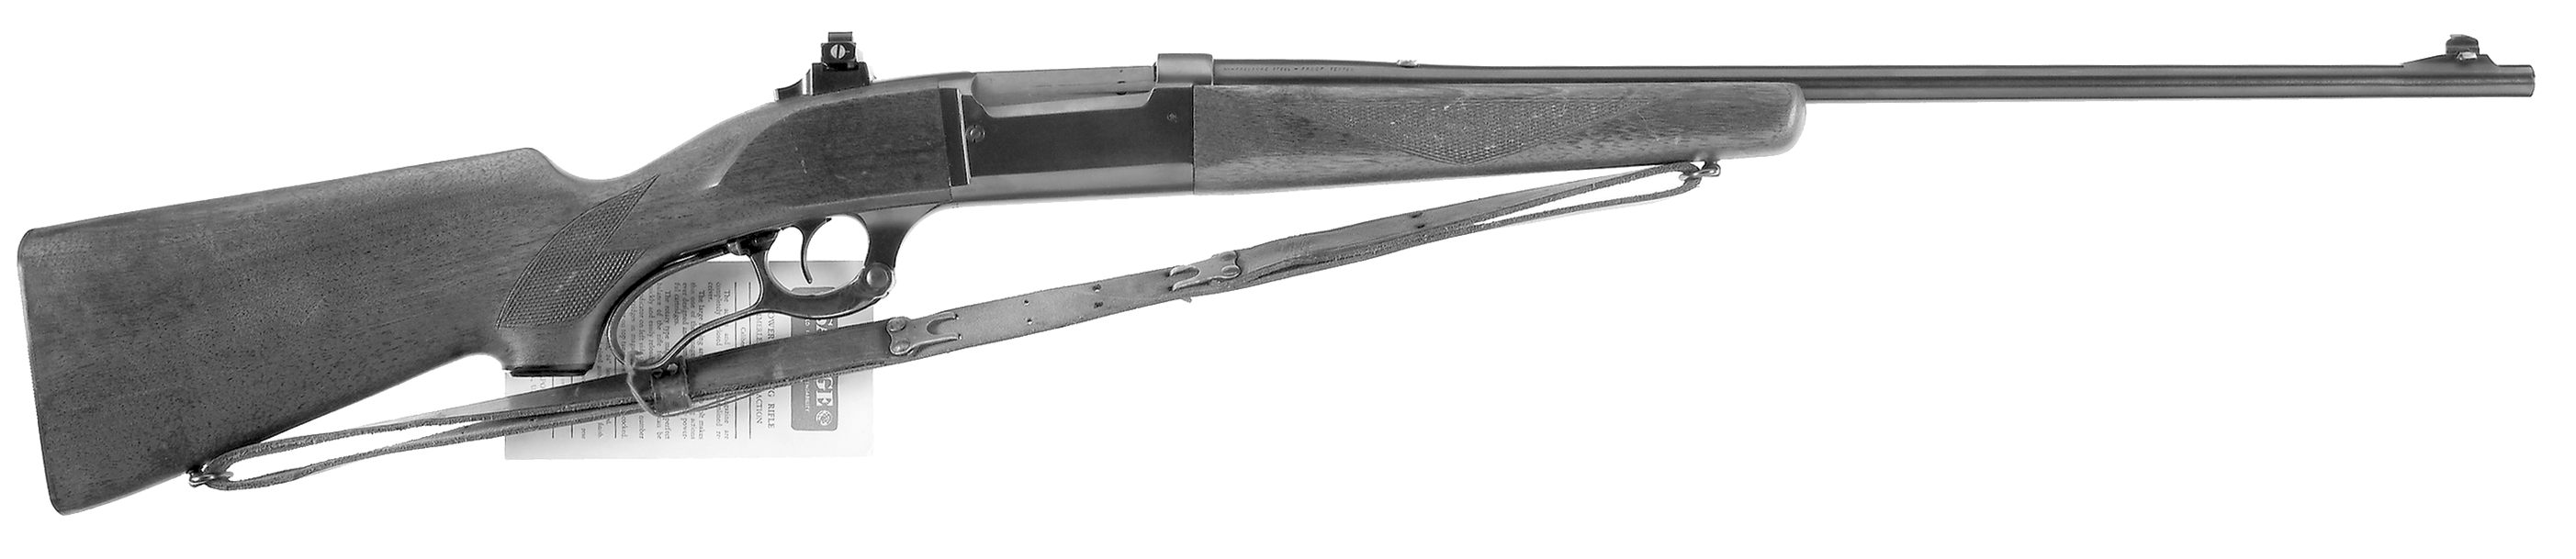 Model 99-EG Standard Weight Rifle